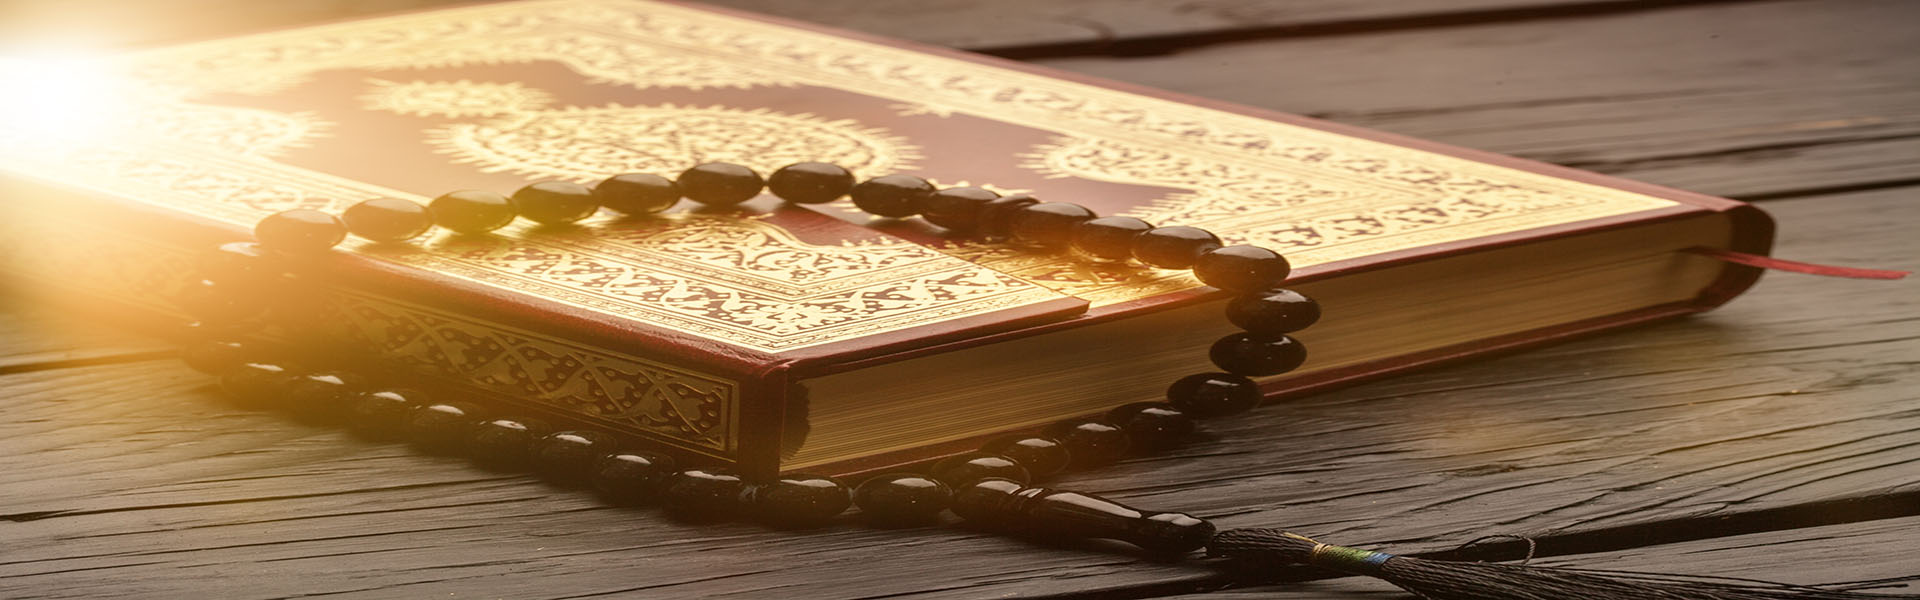 Ne soyez pas préoccupé par le Coran